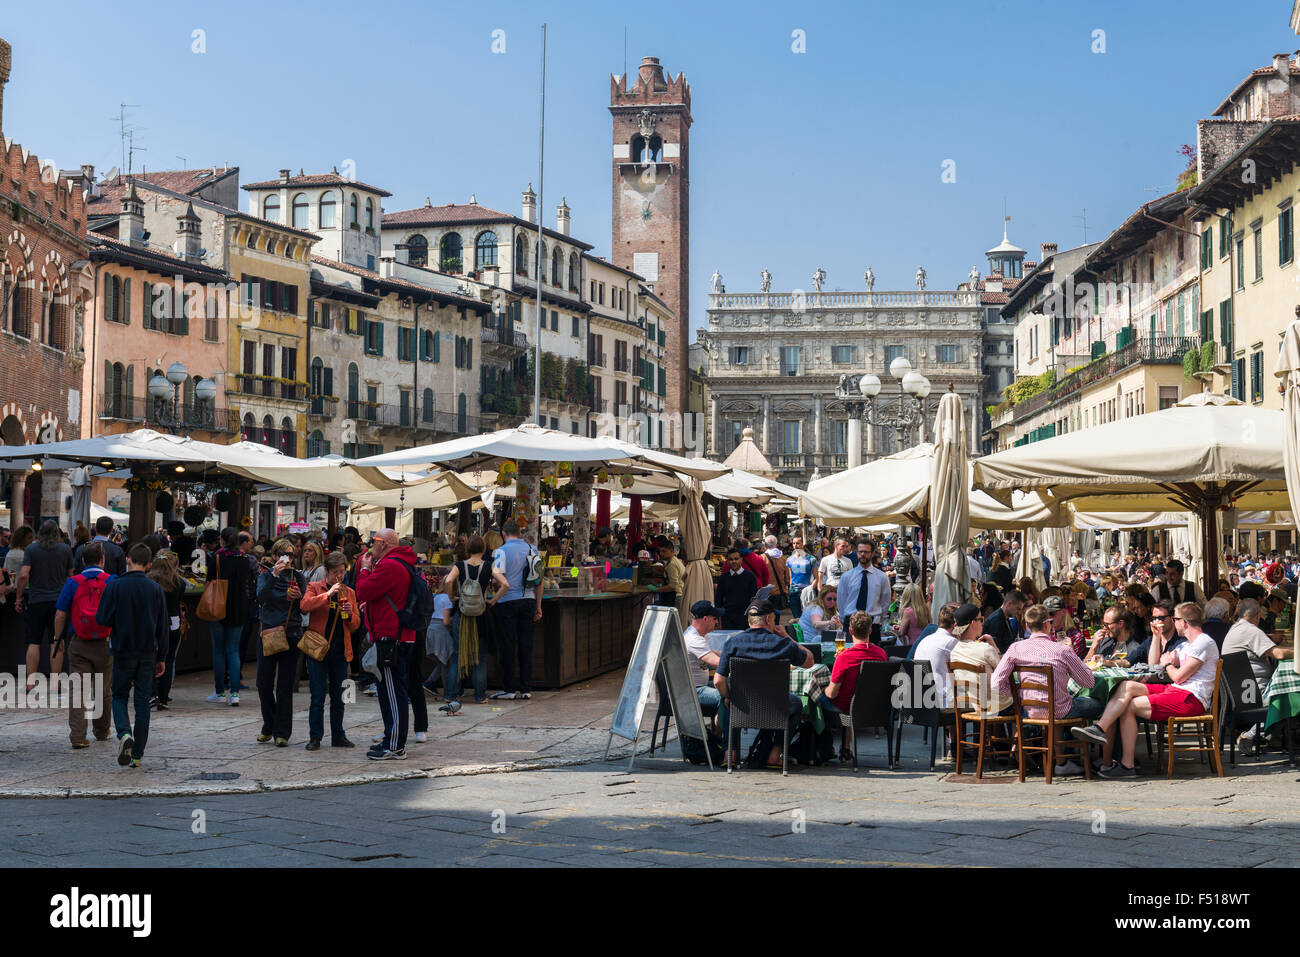 Market on Piazza Erbe, Torre dei Lamberti and the Casa dei Giudici (Judges' Hall) at the end of the square Stock Photo